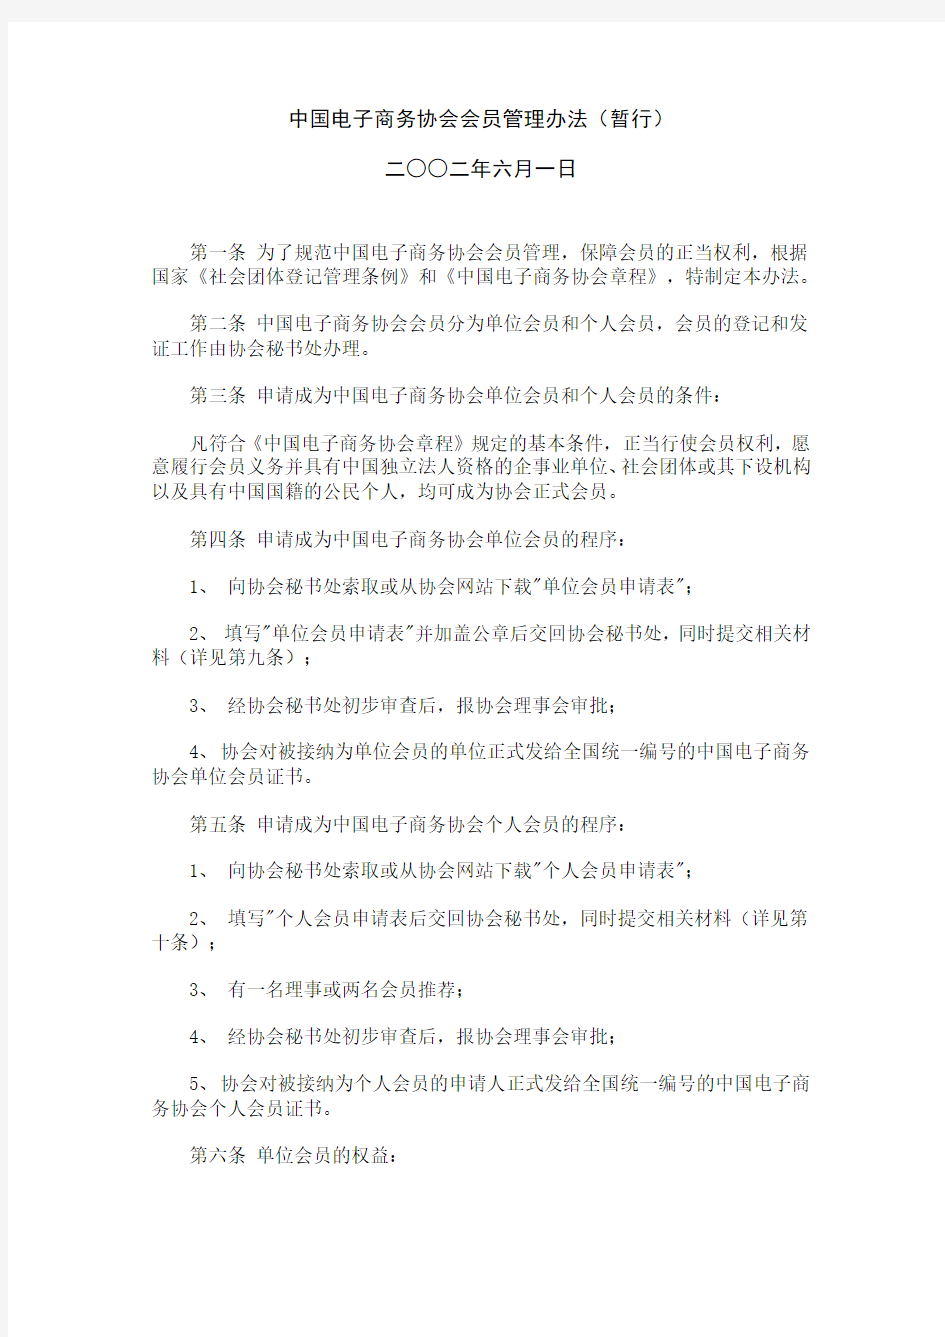 中国电子商务协会会员管理办法(暂行)